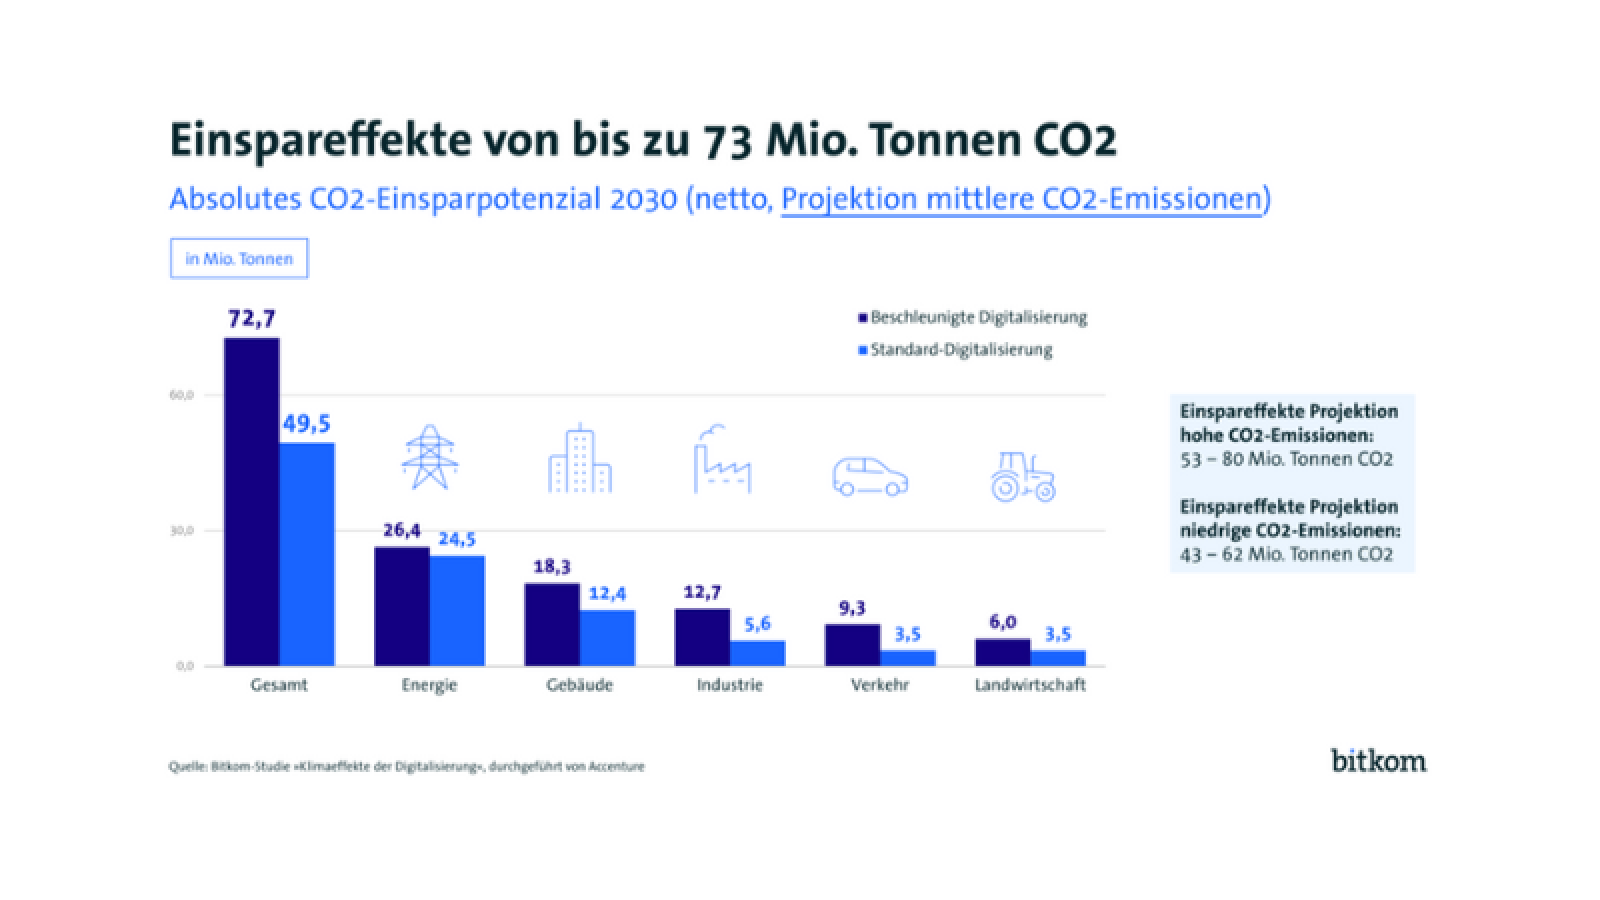 Darstellung der Einspareffekte von Emissionen von digitalen Technologien und KI 